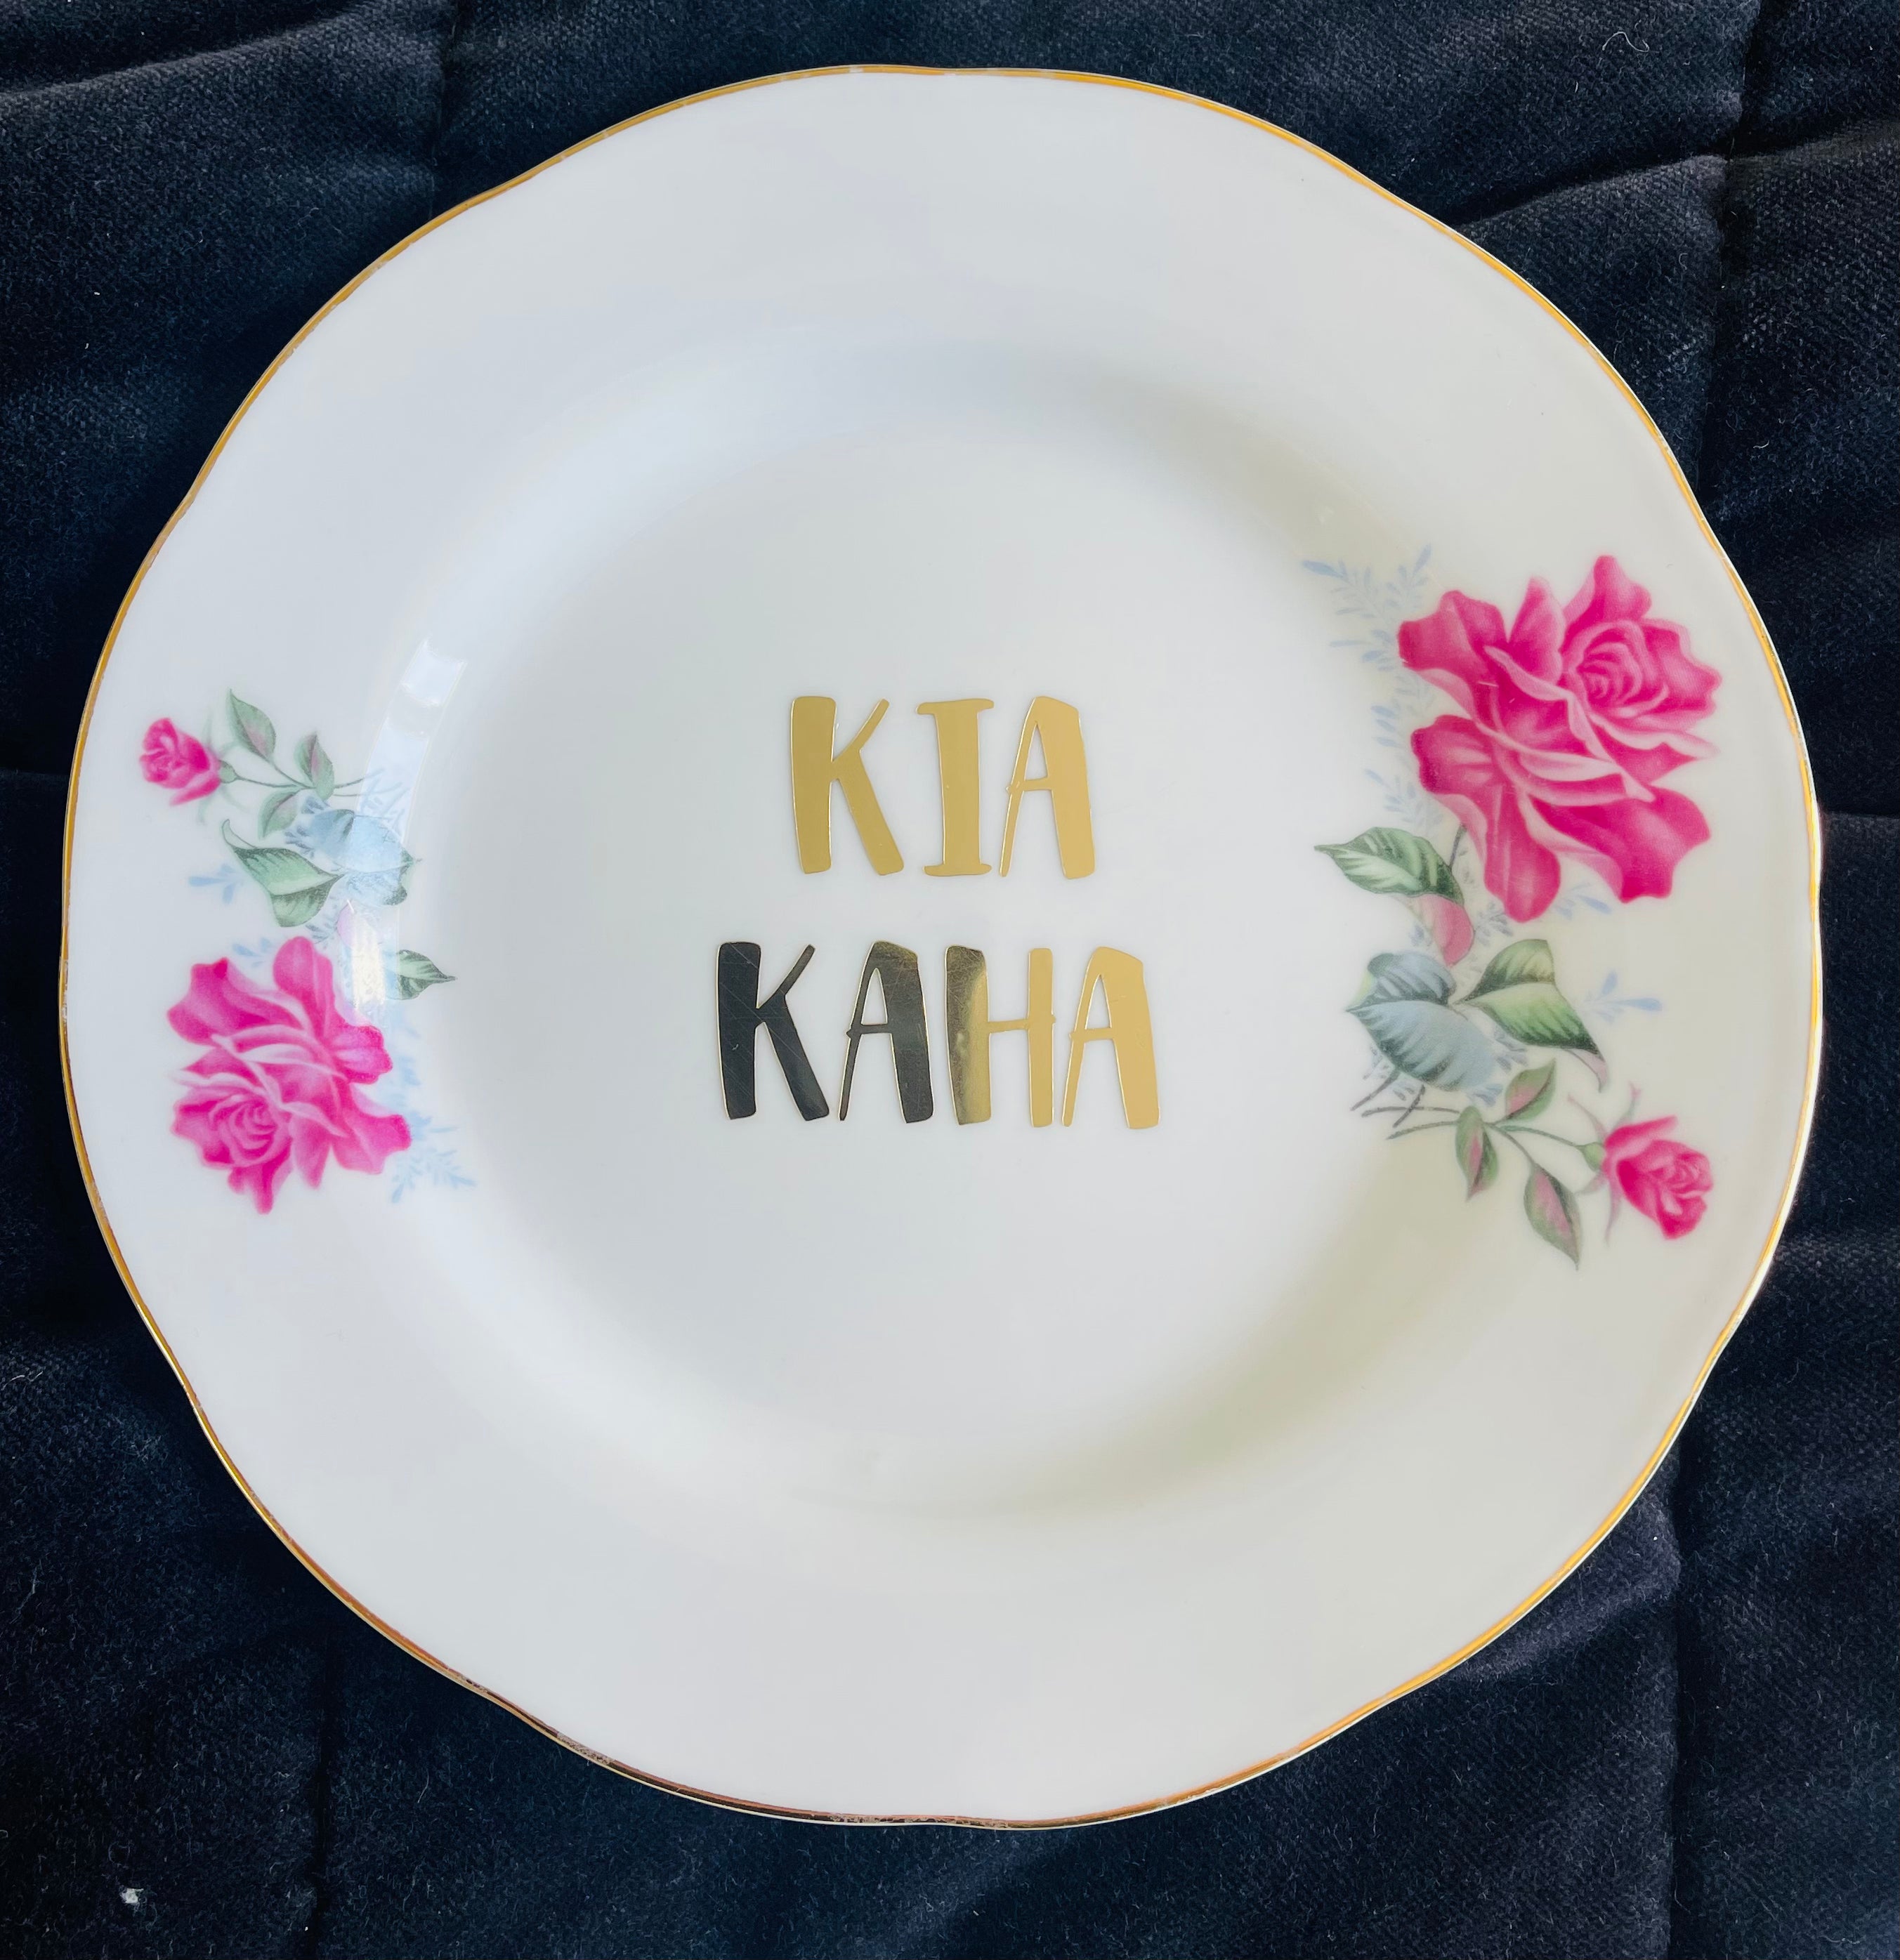 Sweary Plate - Kia Kaha